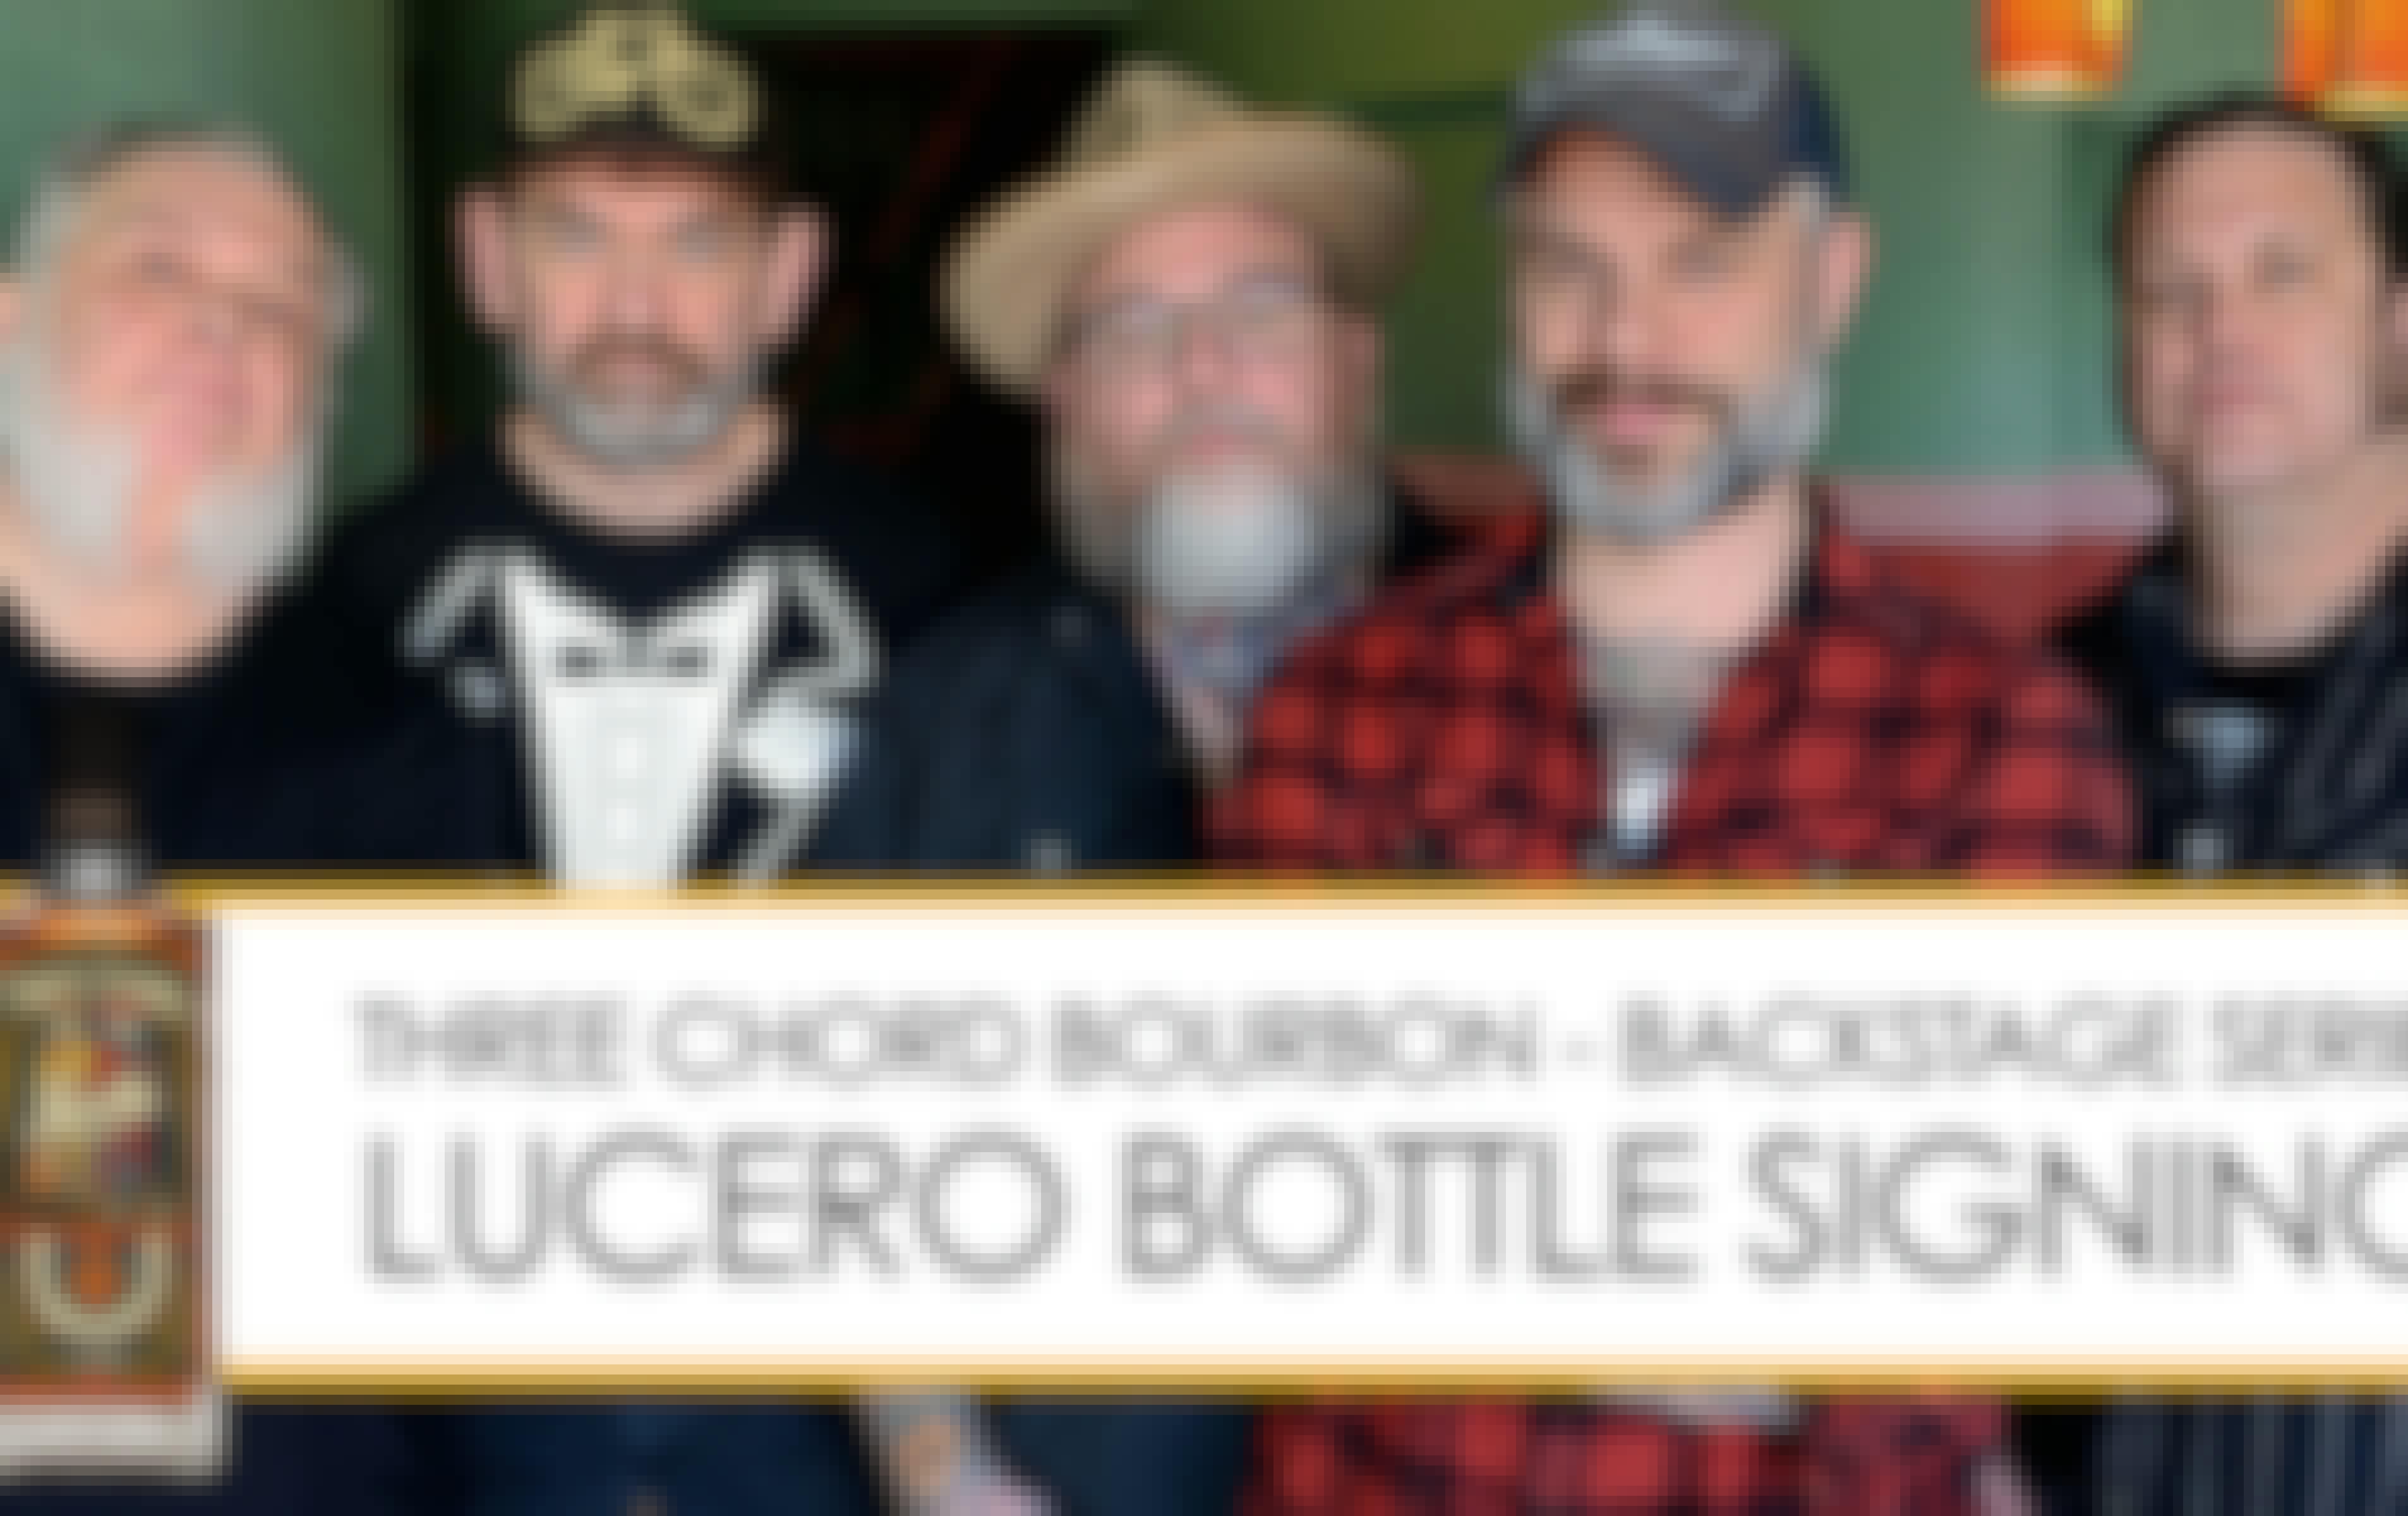  Lucero Three Chord Bottle Signing